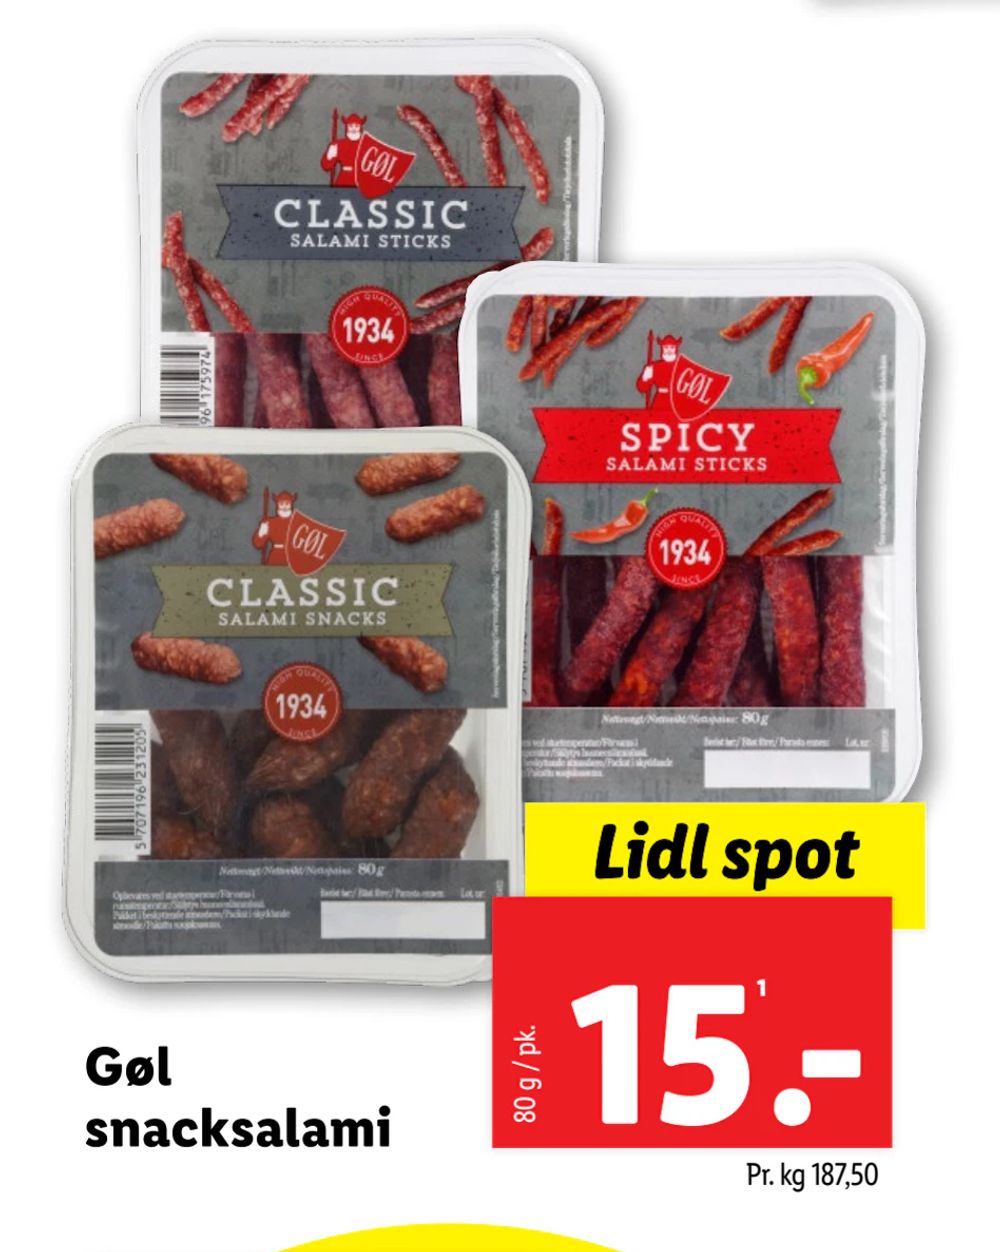 Tilbud på Gøl snacksalami fra Lidl til 15 kr.